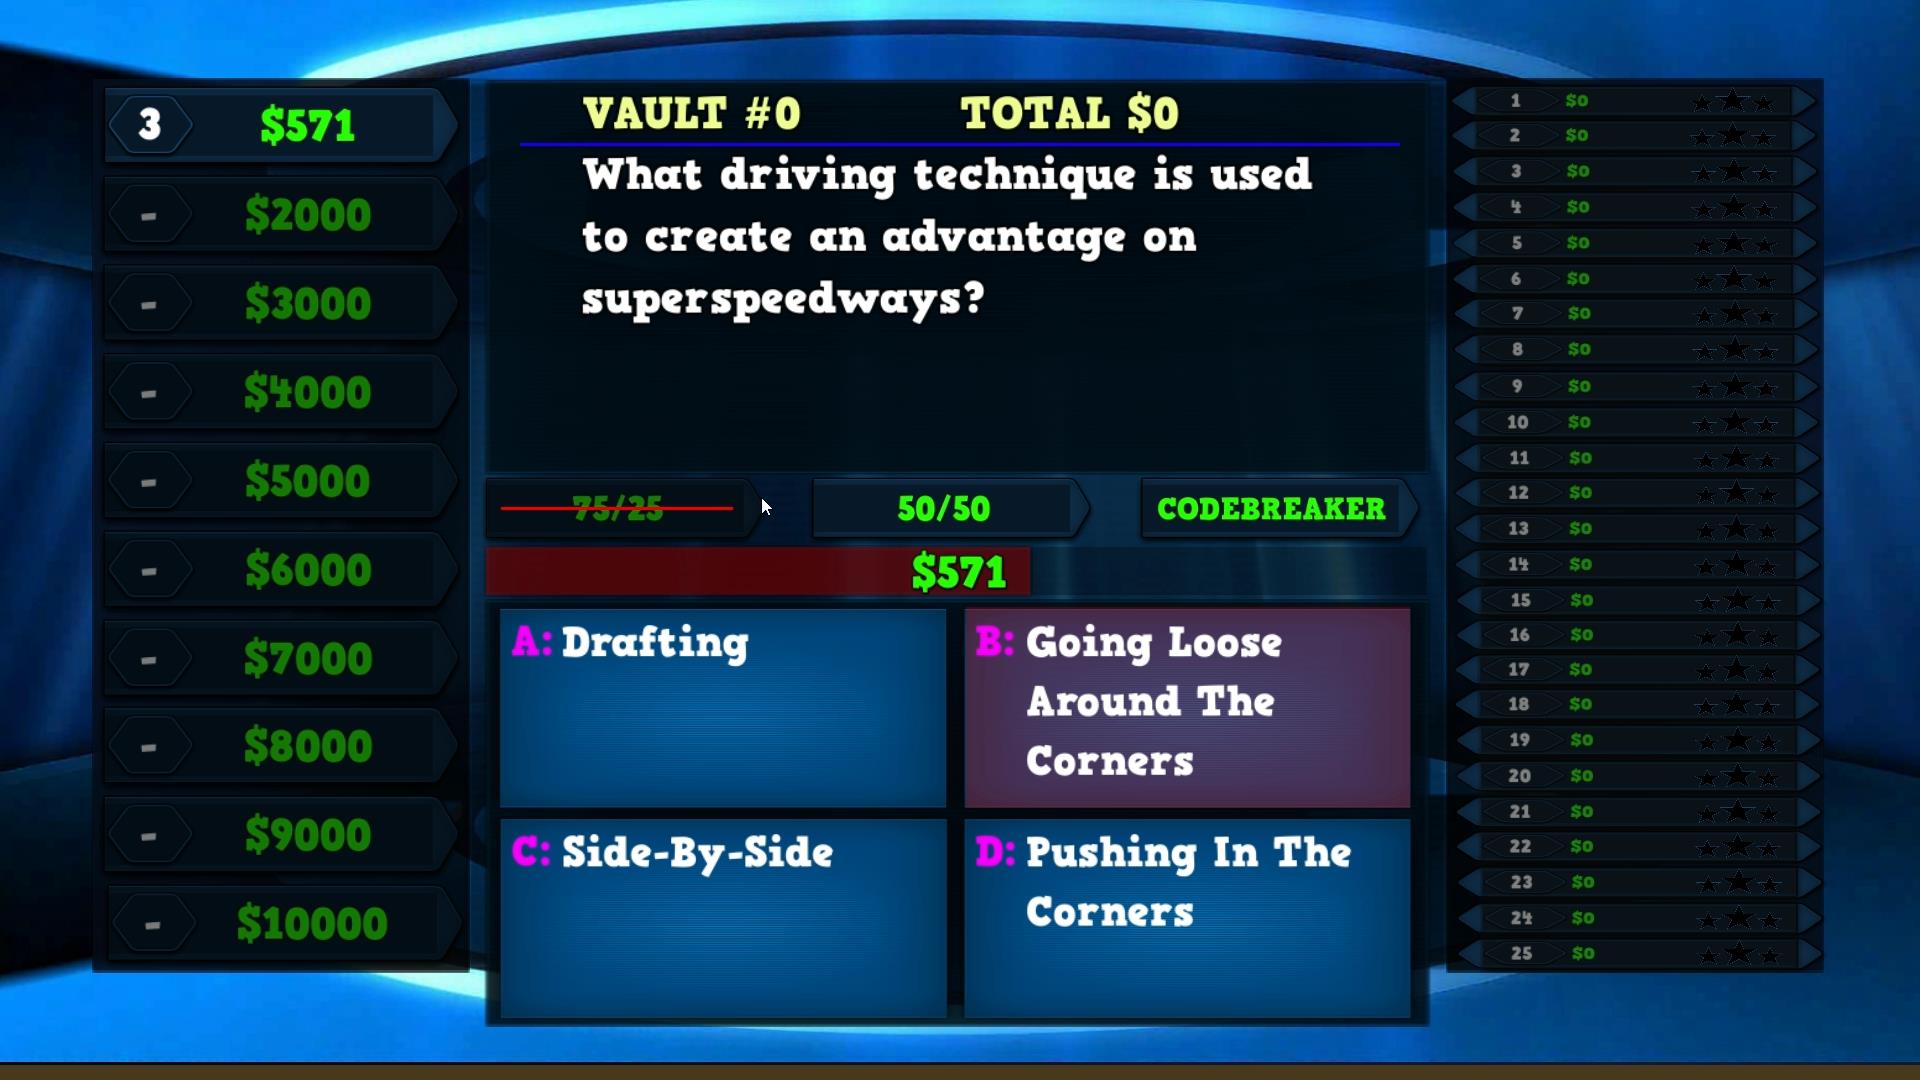 Trivia Vault: Auto Racing Trivia Steam CD Key